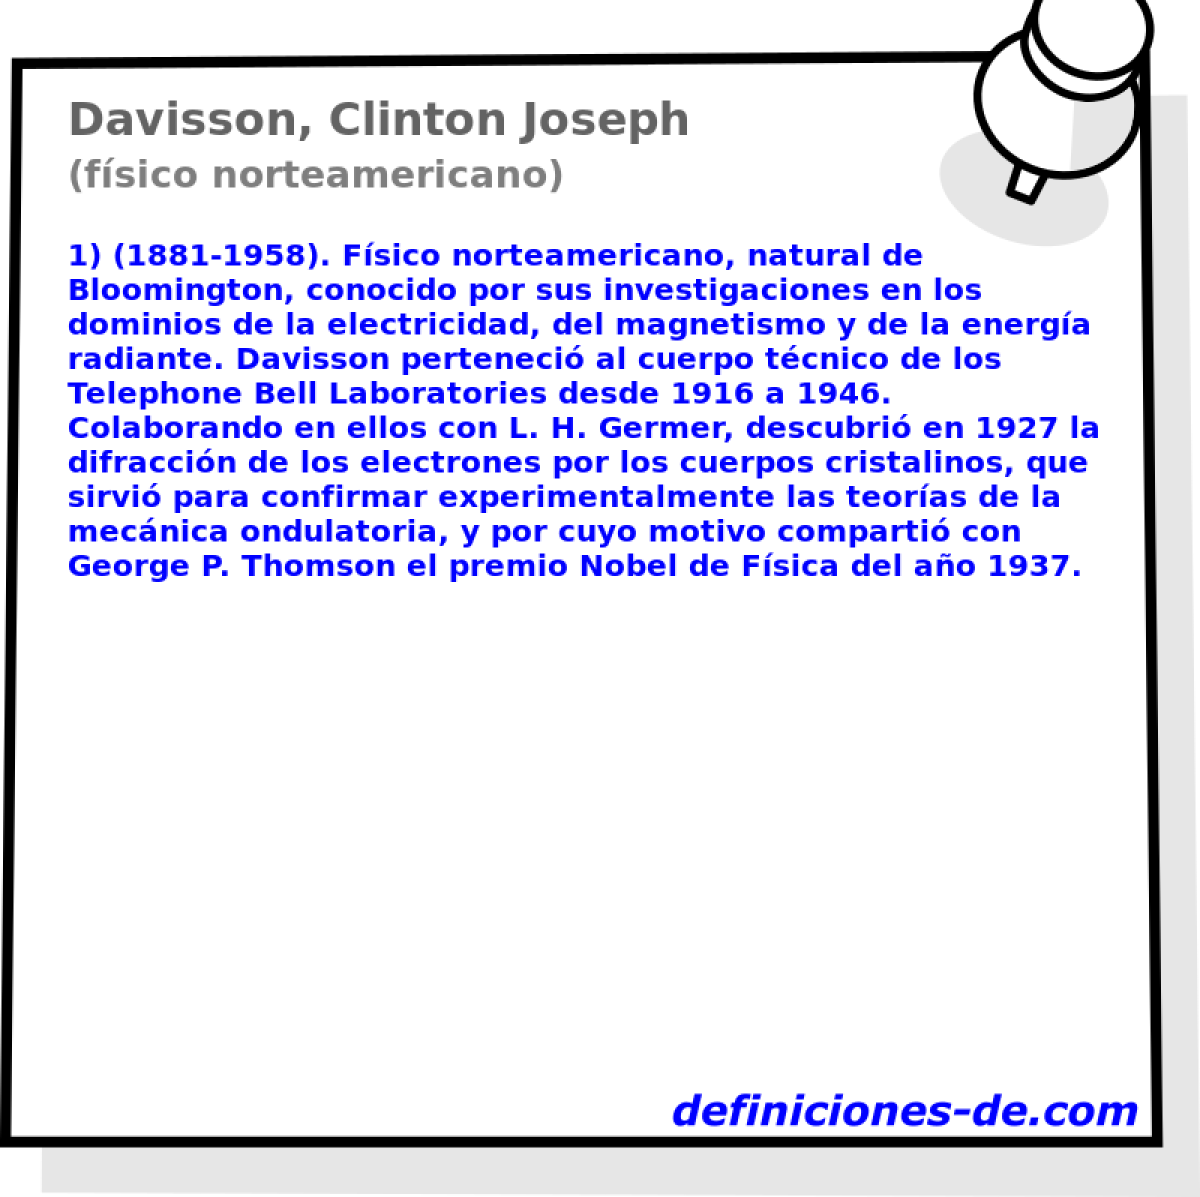 Davisson, Clinton Joseph (fsico norteamericano)